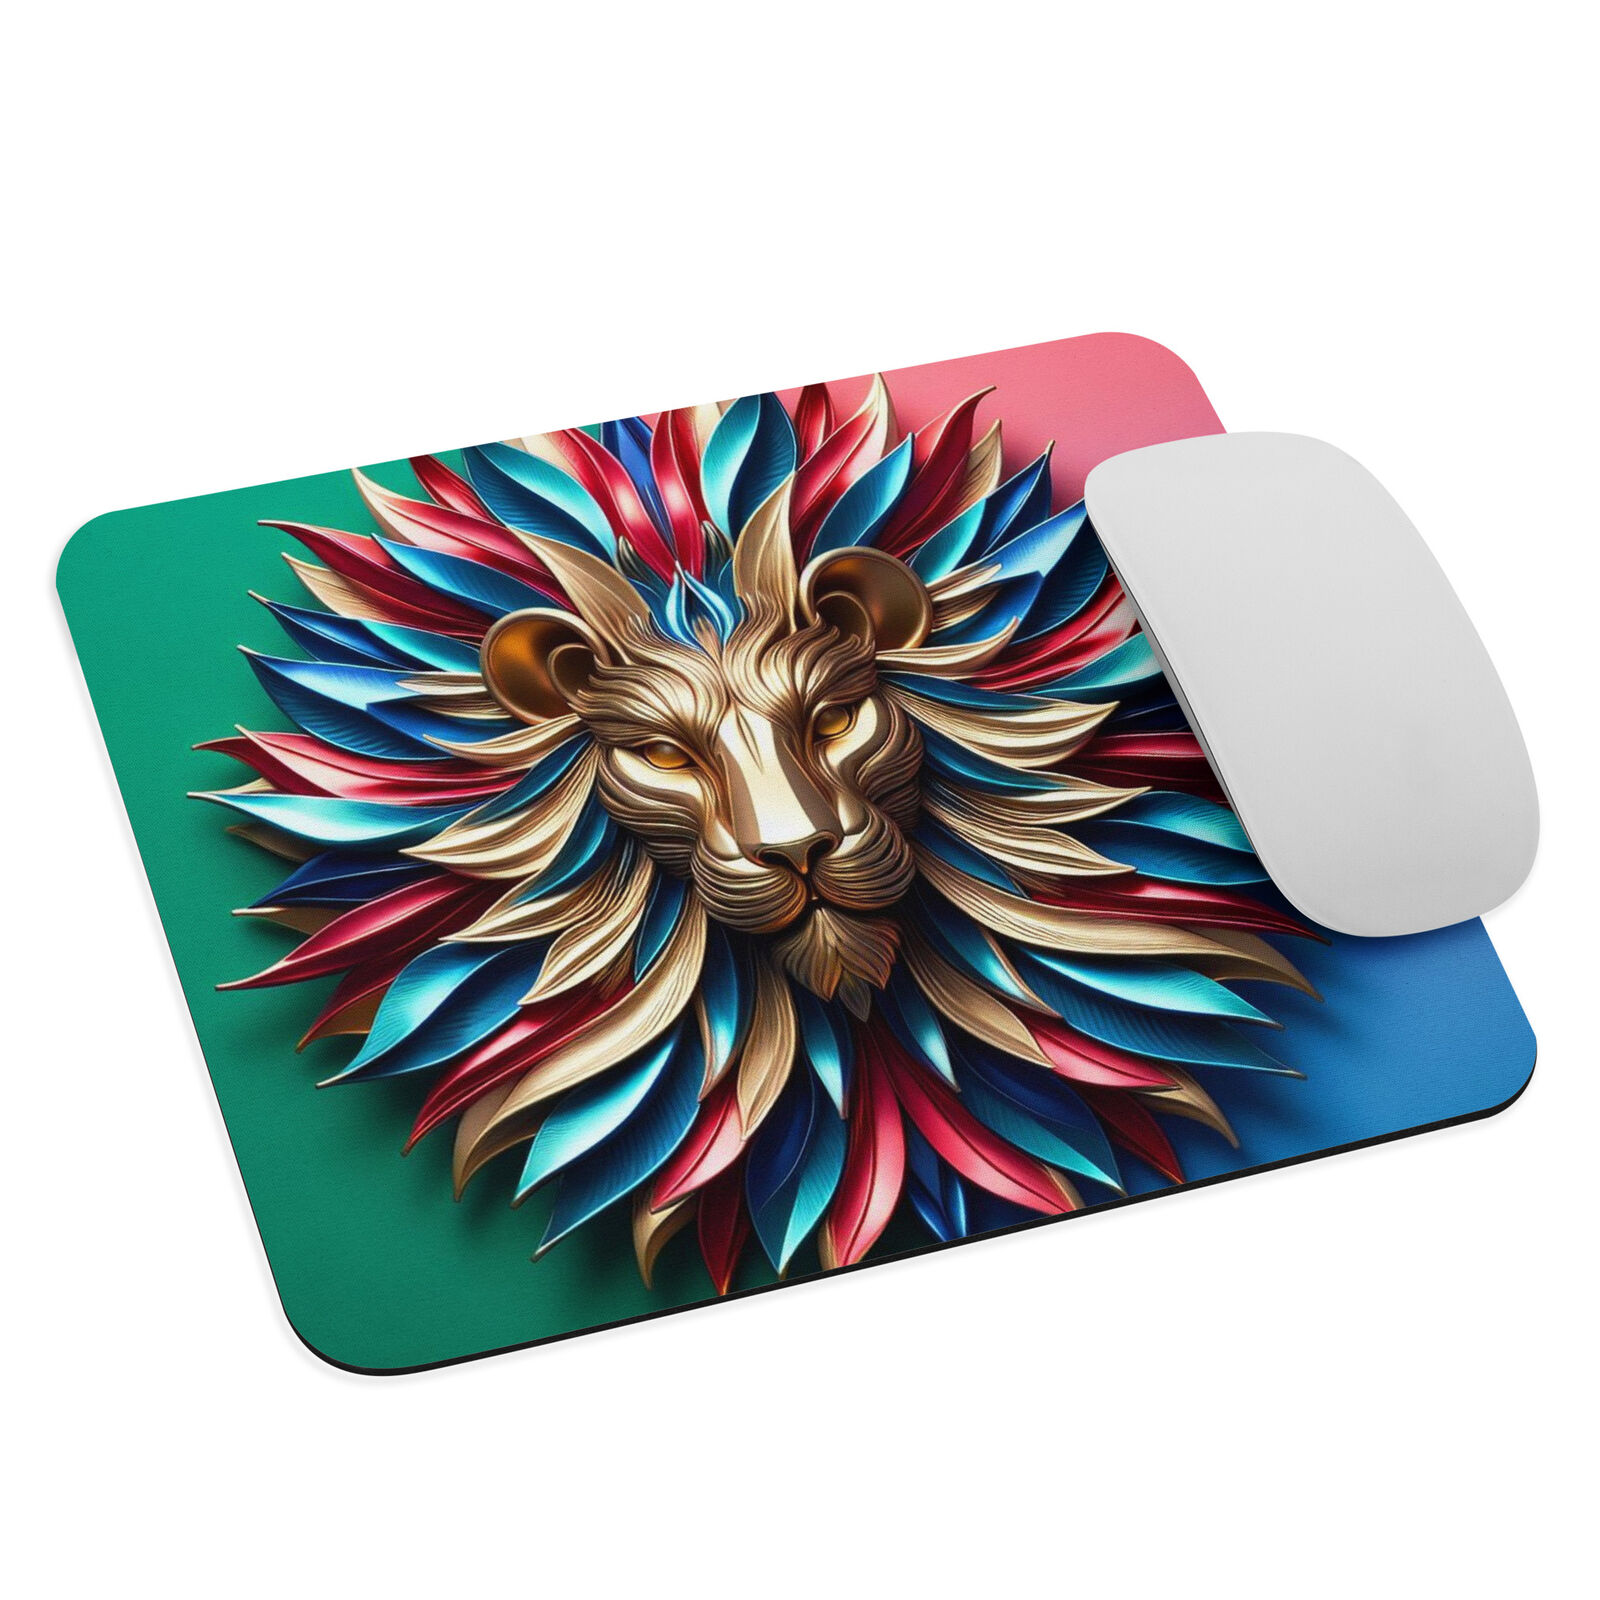 Lion mouse pad